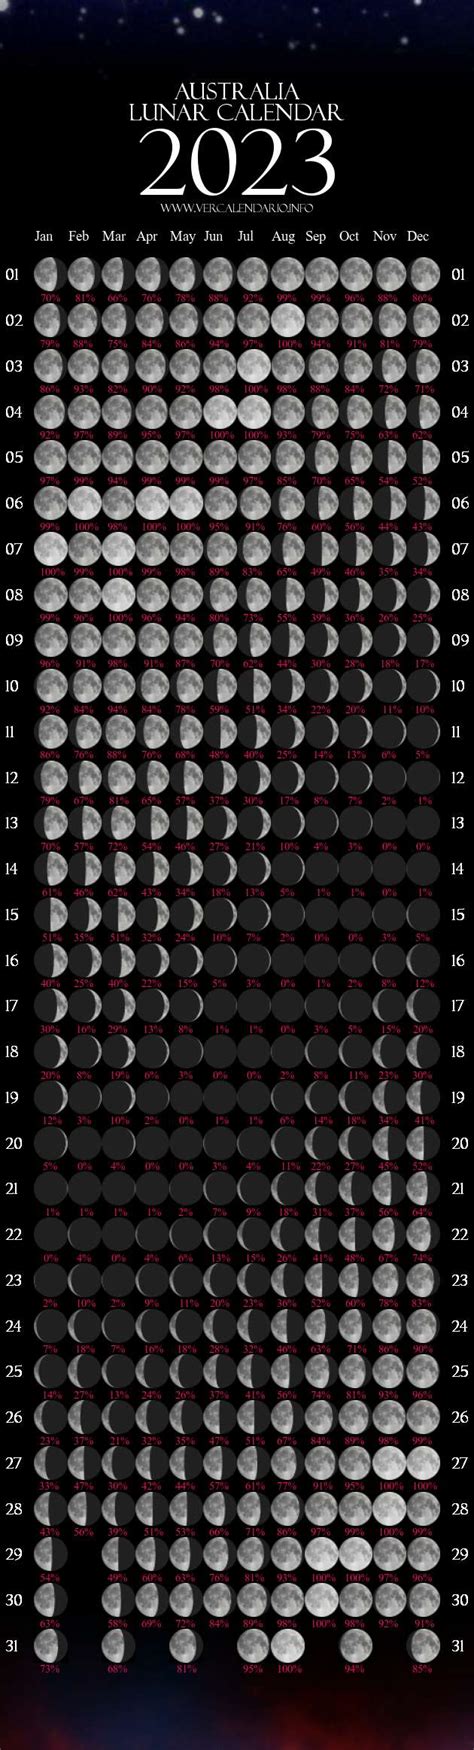 Lunar Calendar 2023 Australia